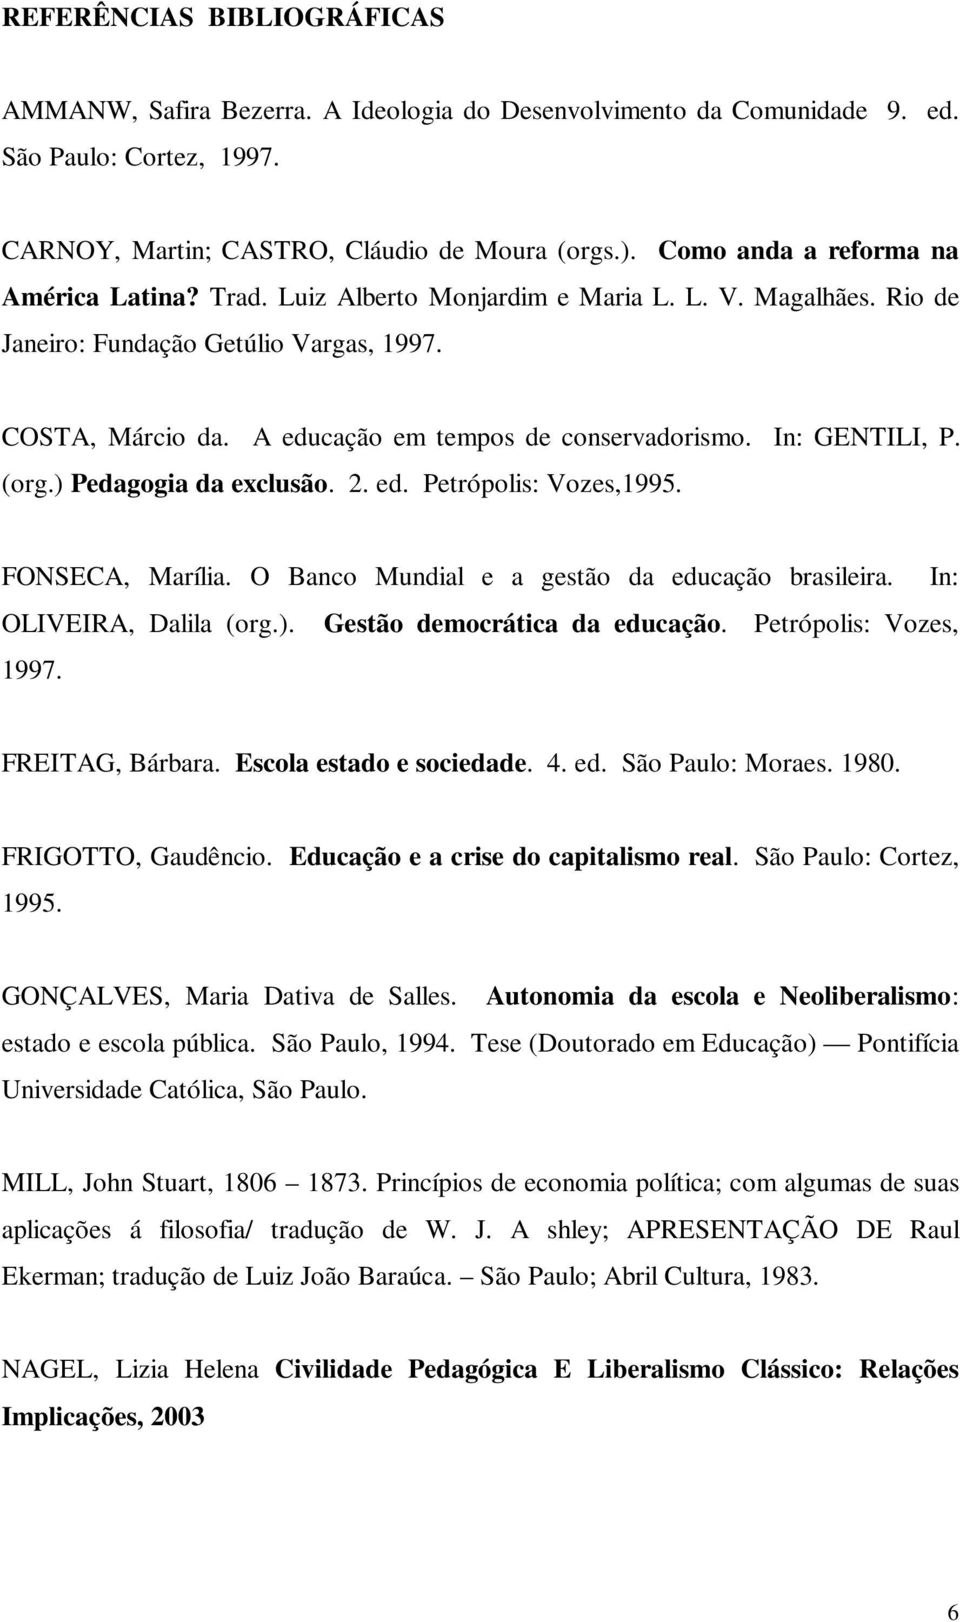 A educação em tempos de conservadorismo. In: GENTILI, P. (org.) Pedagogia da exclusão. 2. ed. Petrópolis: Vozes,1995. FONSECA, Marília. O Banco Mundial e a gestão da educação brasileira.